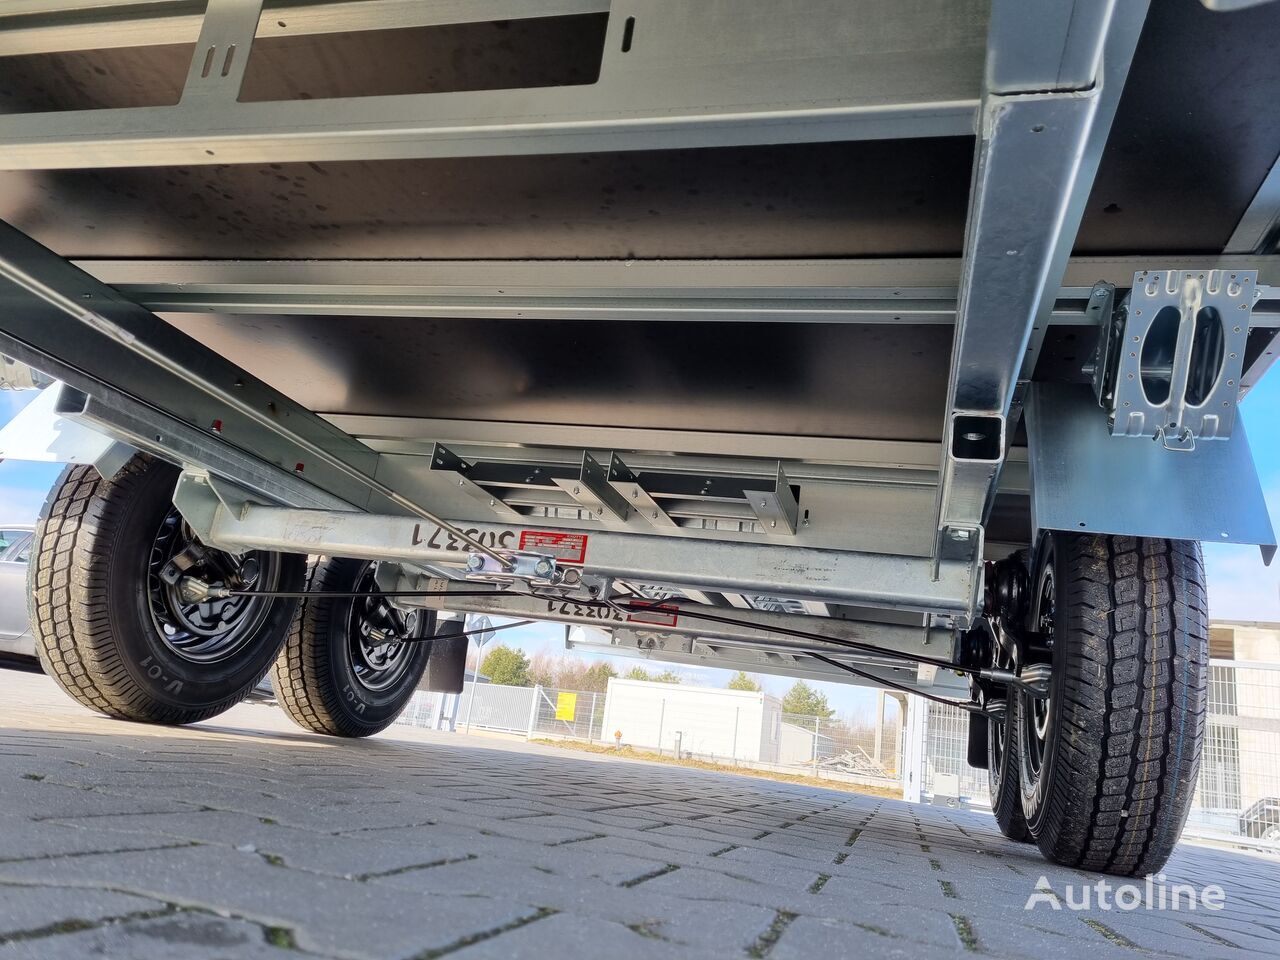 Nieuw Open/ Plateau aanhangwagen Brenderup 5520 WATB 3,5T GVW 517x204 cm 5m long trailer platform: afbeelding 13